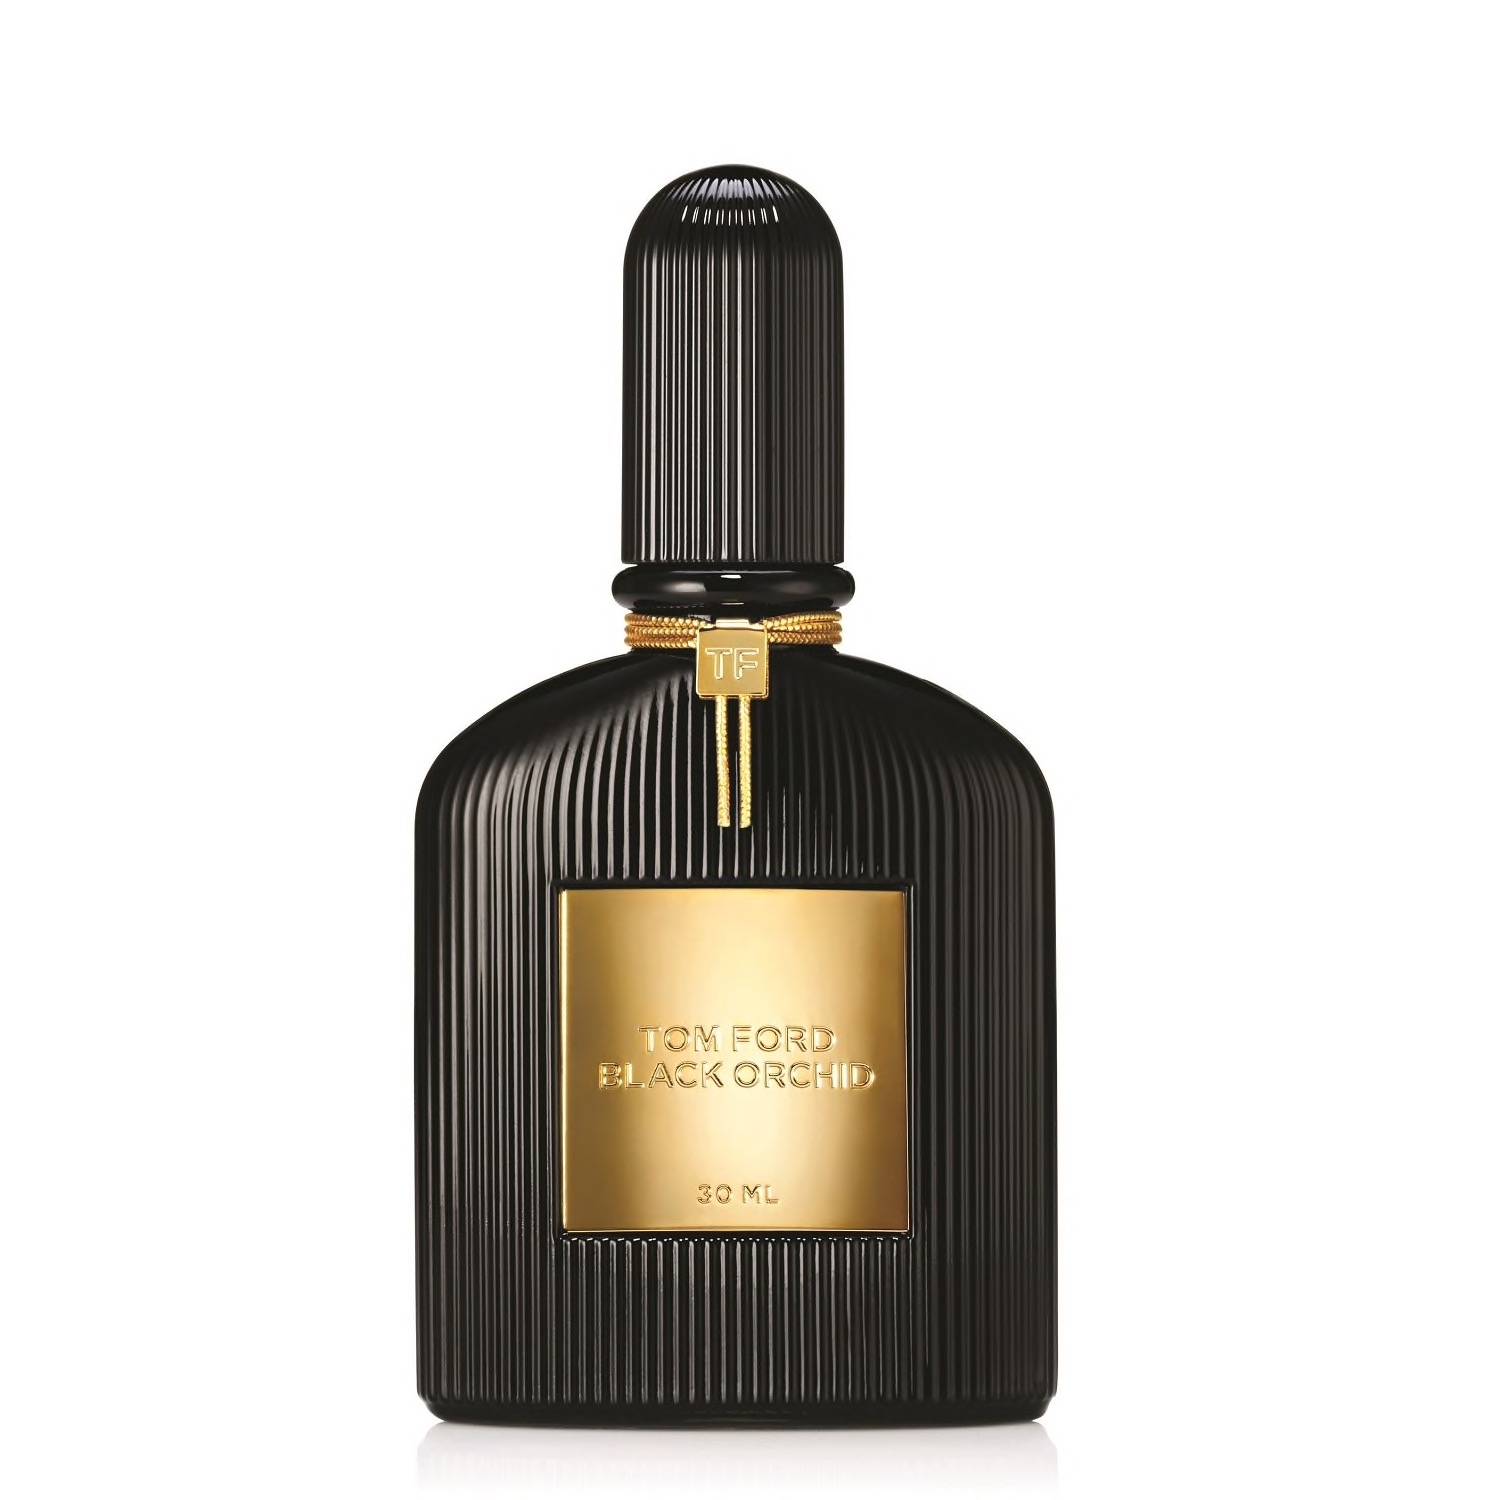 Perfumy Tom Ford, cena 339 zł/30 ml (Fot. Materiały prasowe)